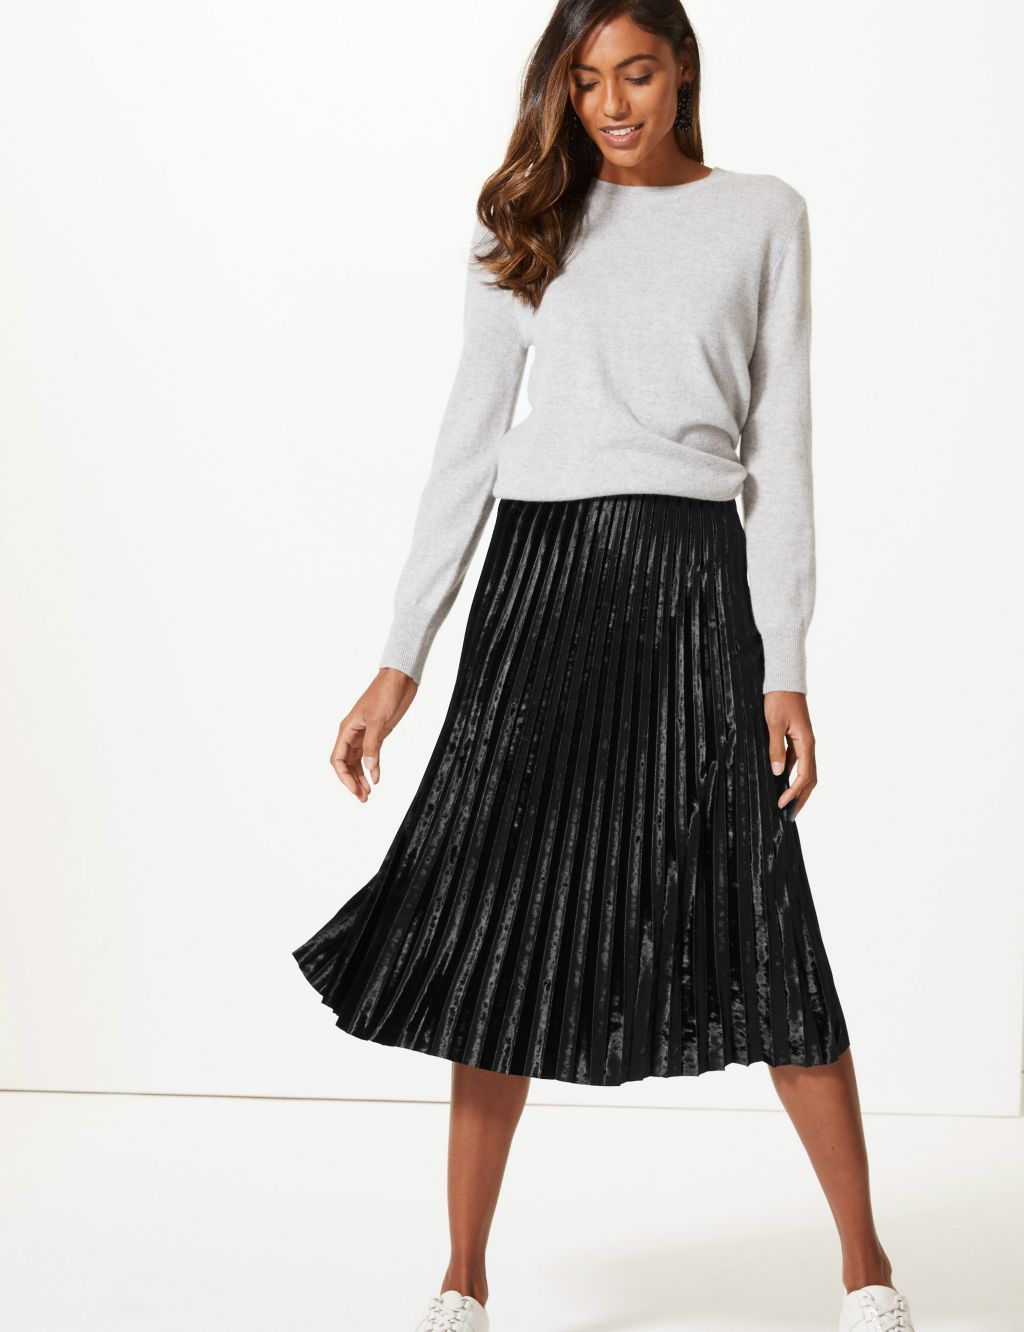 Top more than 65 black velvet midi skirt latest